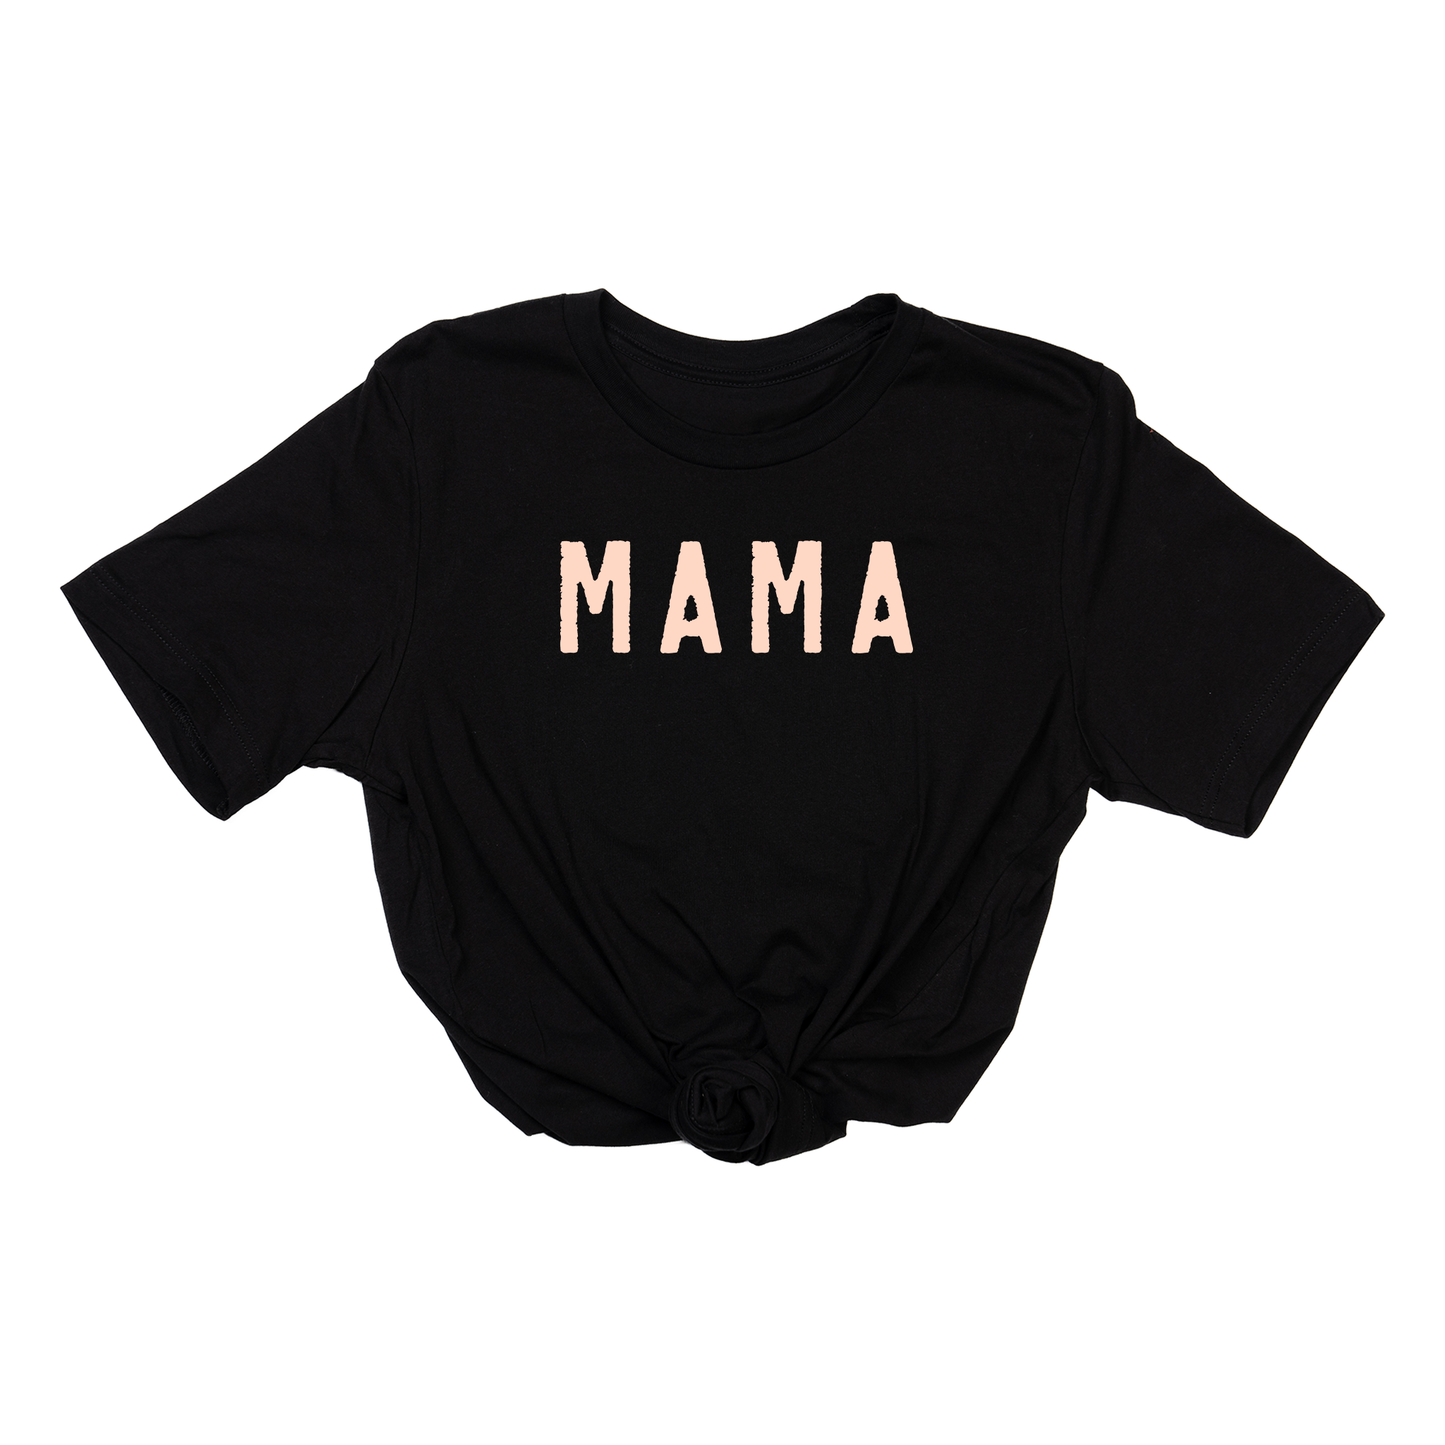 Mama (Rough,  Peach) - Tee (Black)